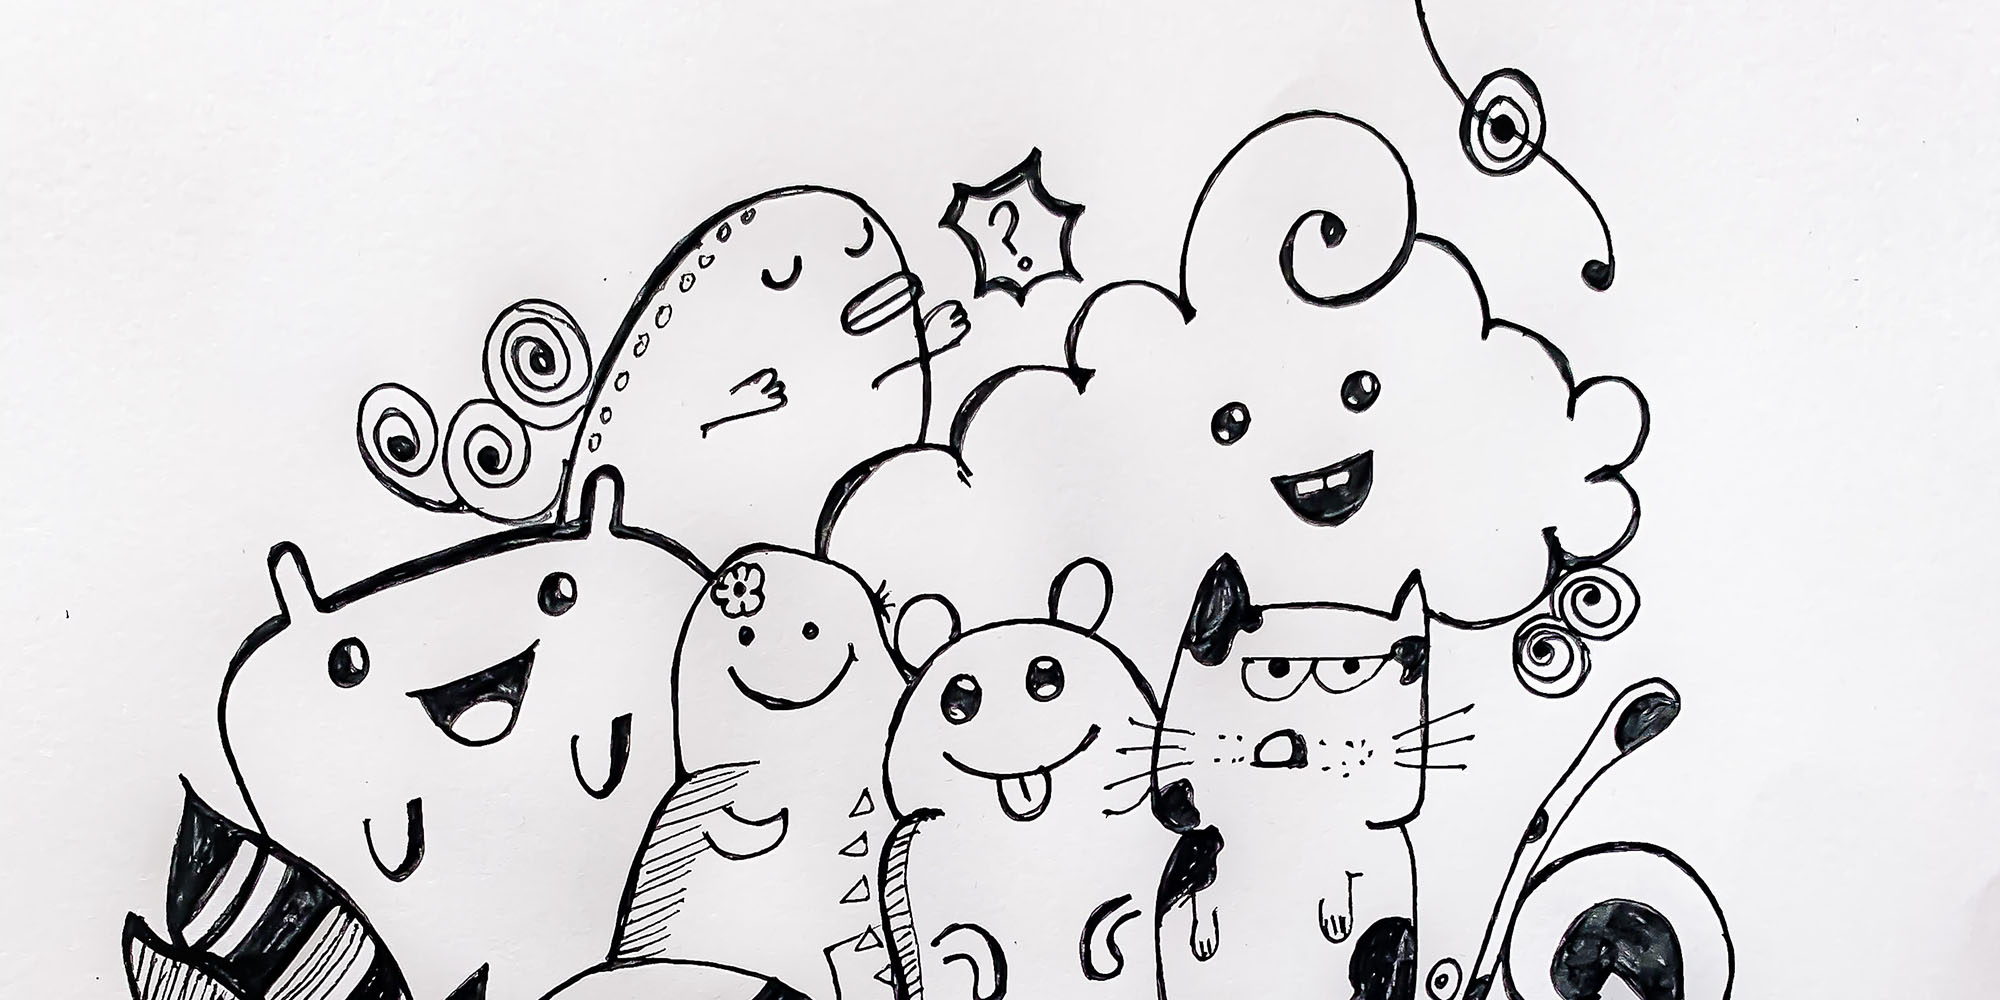 tegning af dyr i sorthvid doodlestil